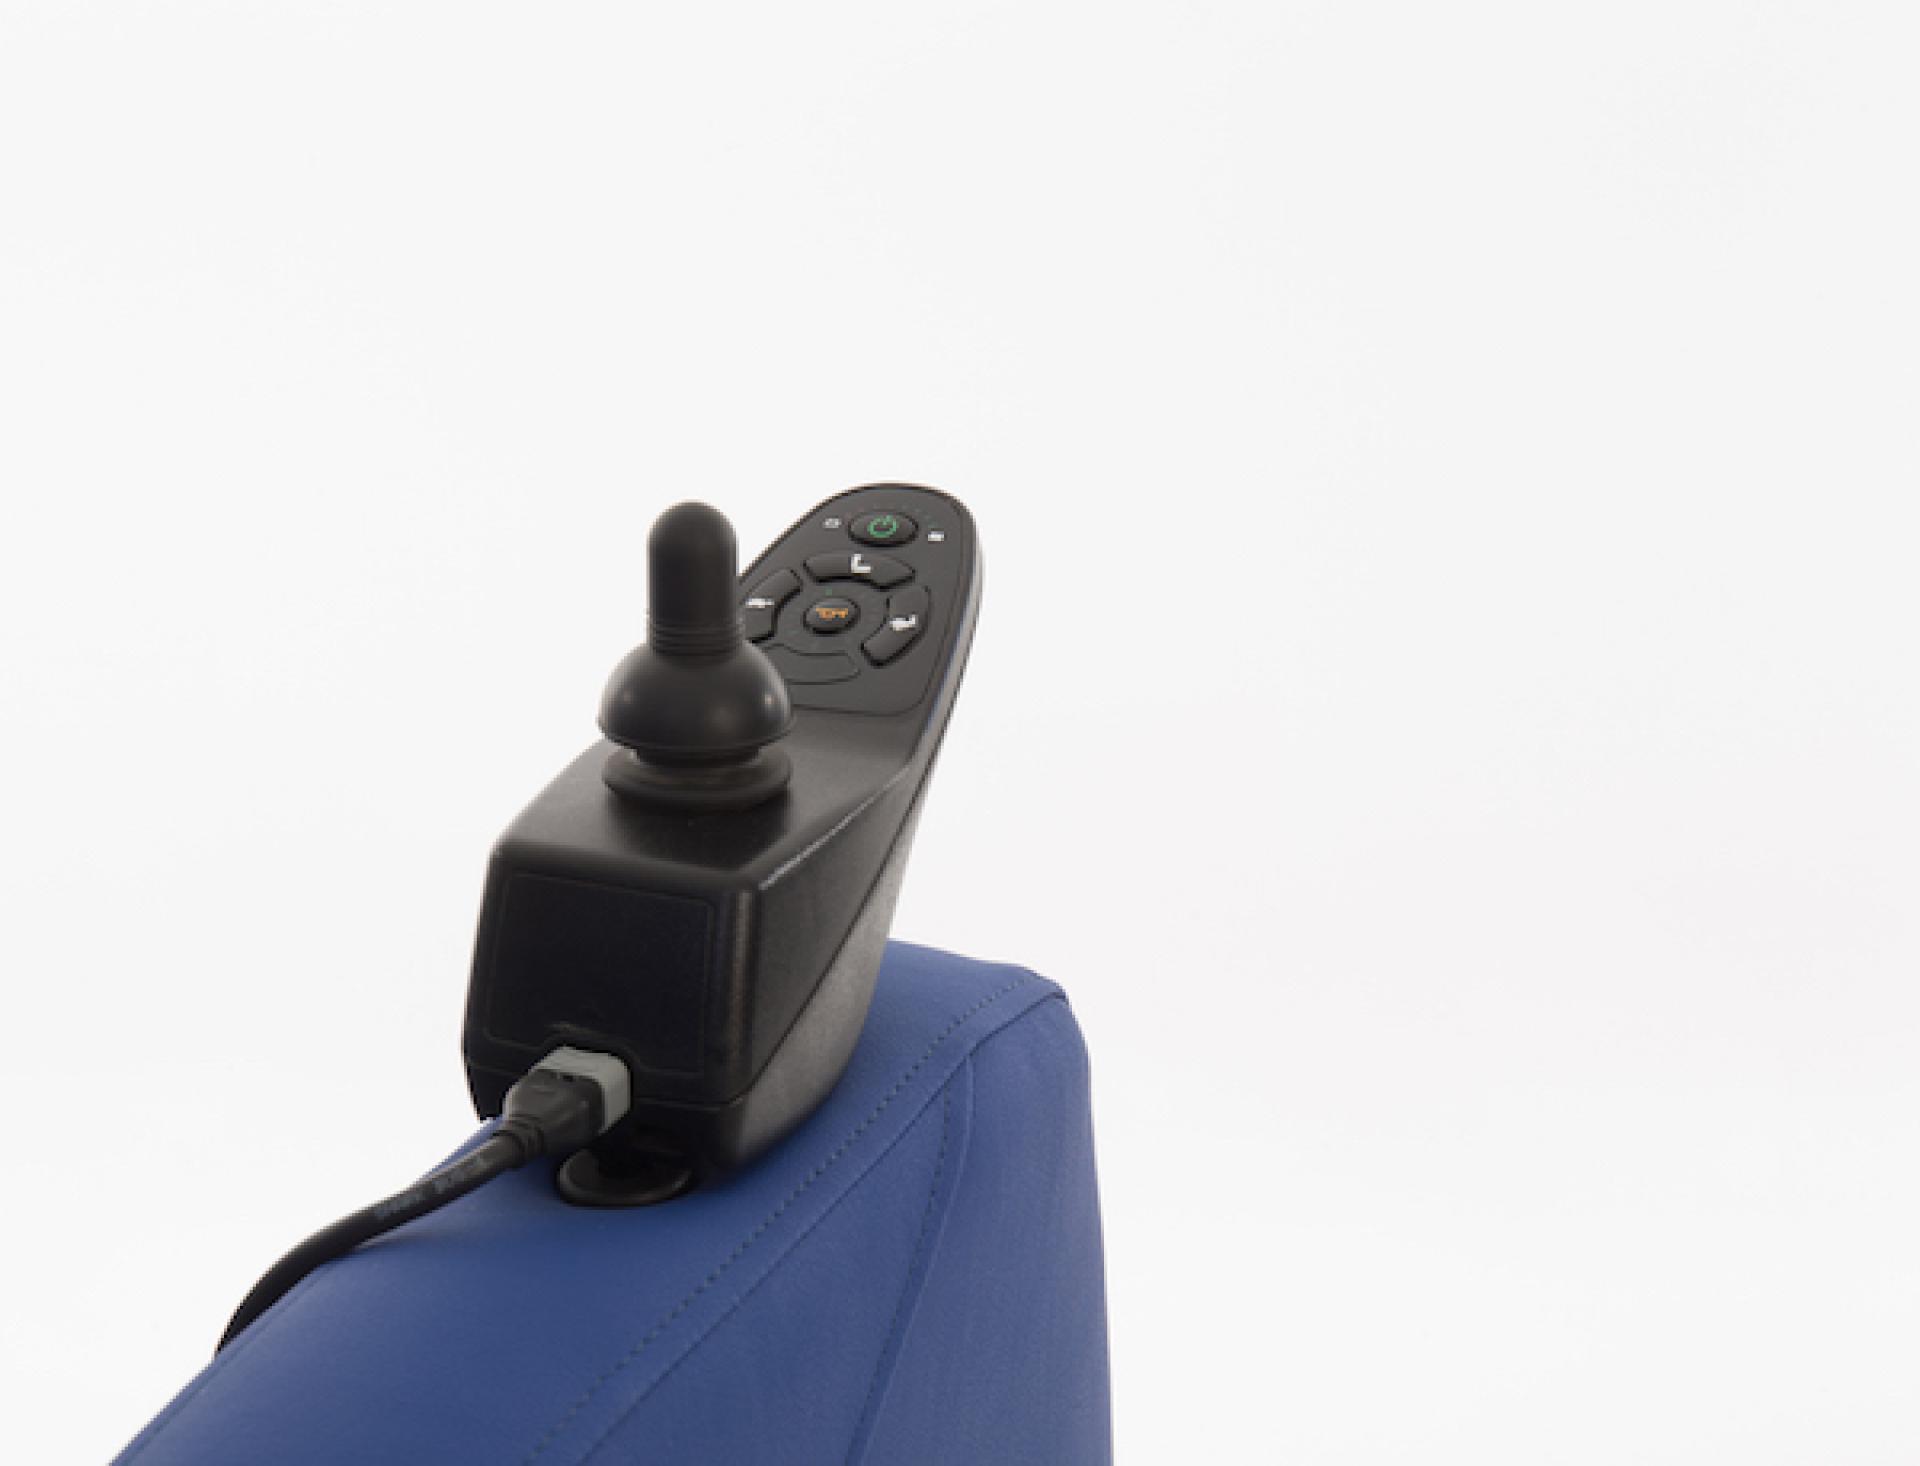 Comfortstoel met joystick op wielen Easy-Rider van Ineva Design